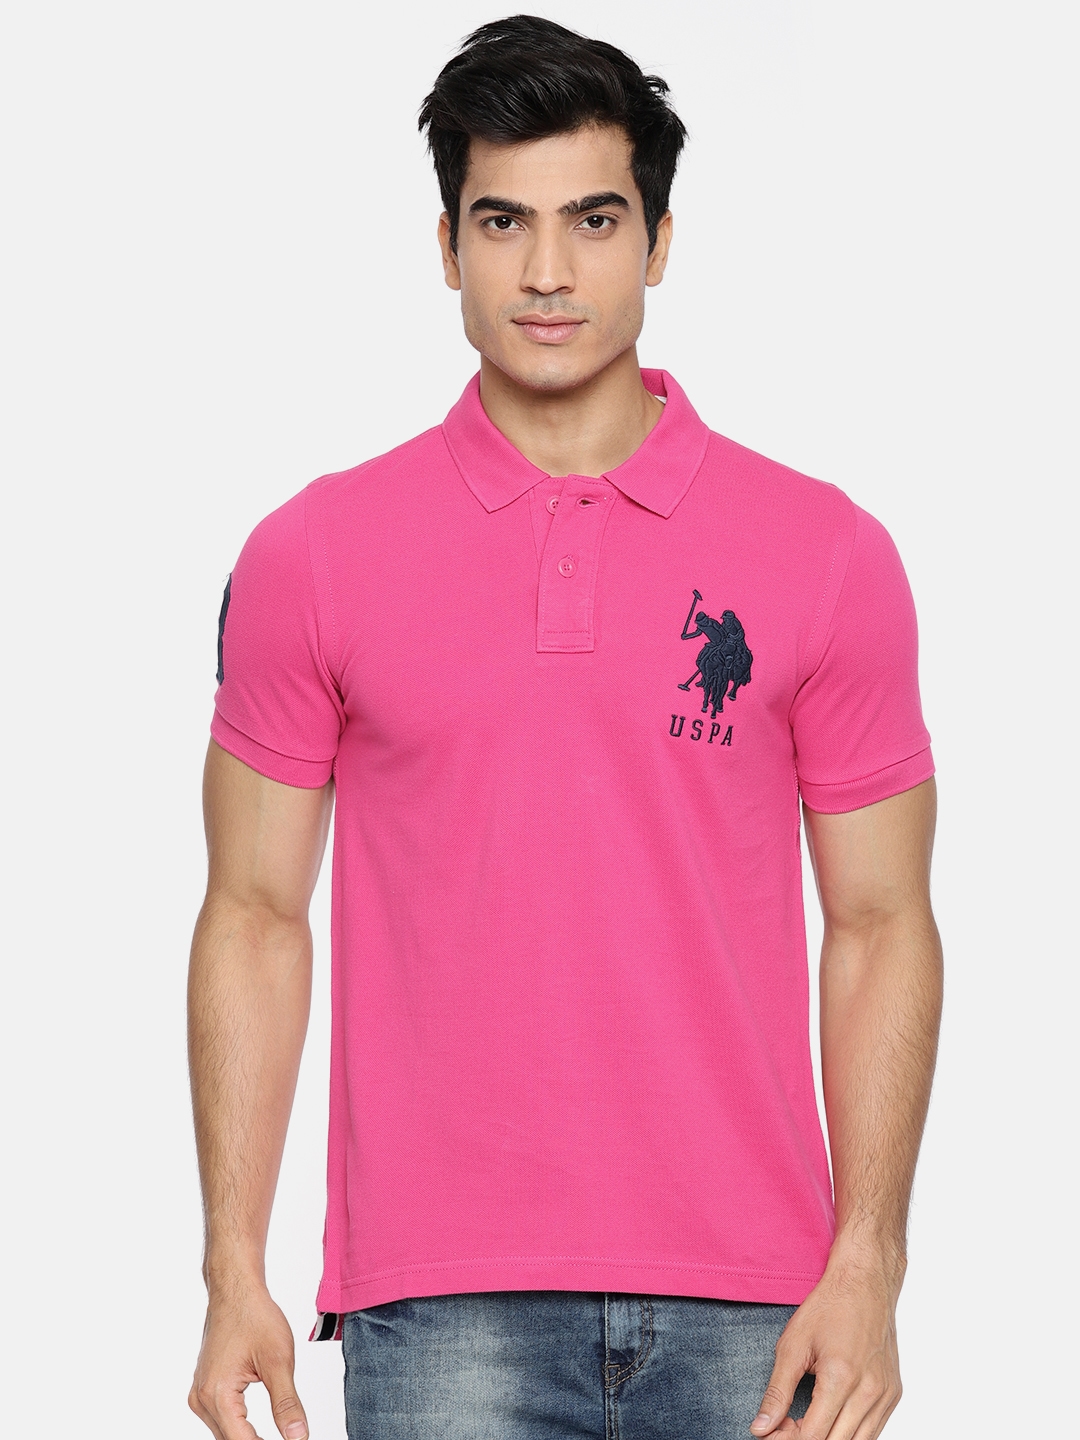 mens pink collared shirt